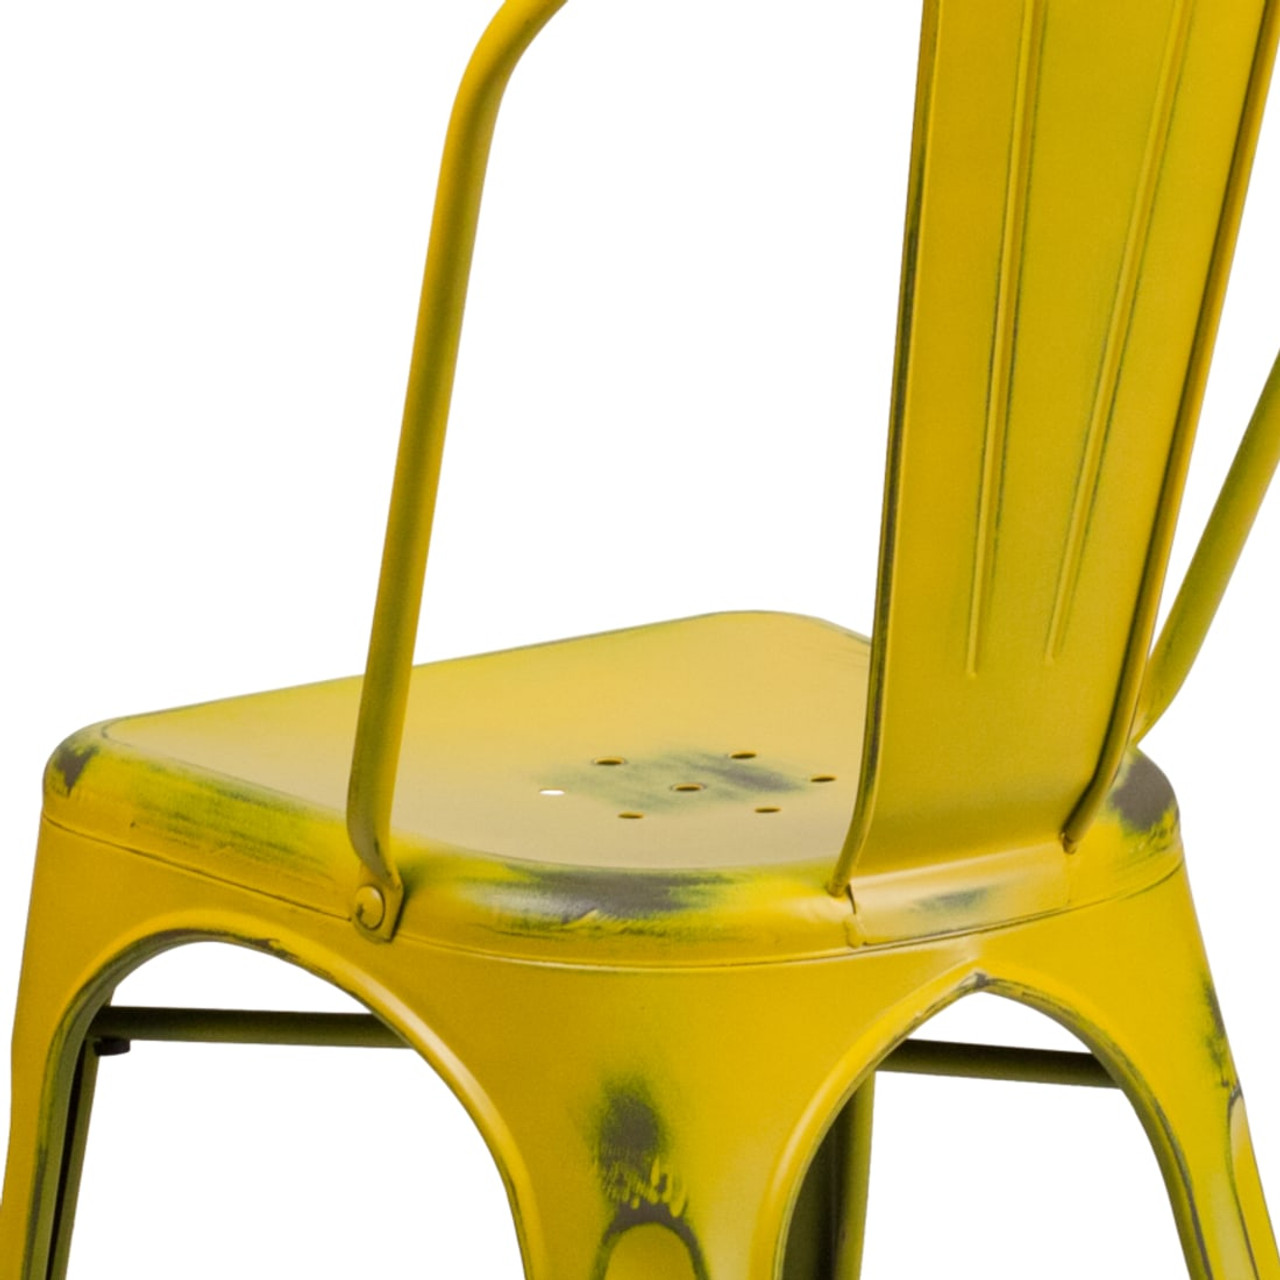 Distressed Yellow Metal Indoor-Outdoor Stackable Chair